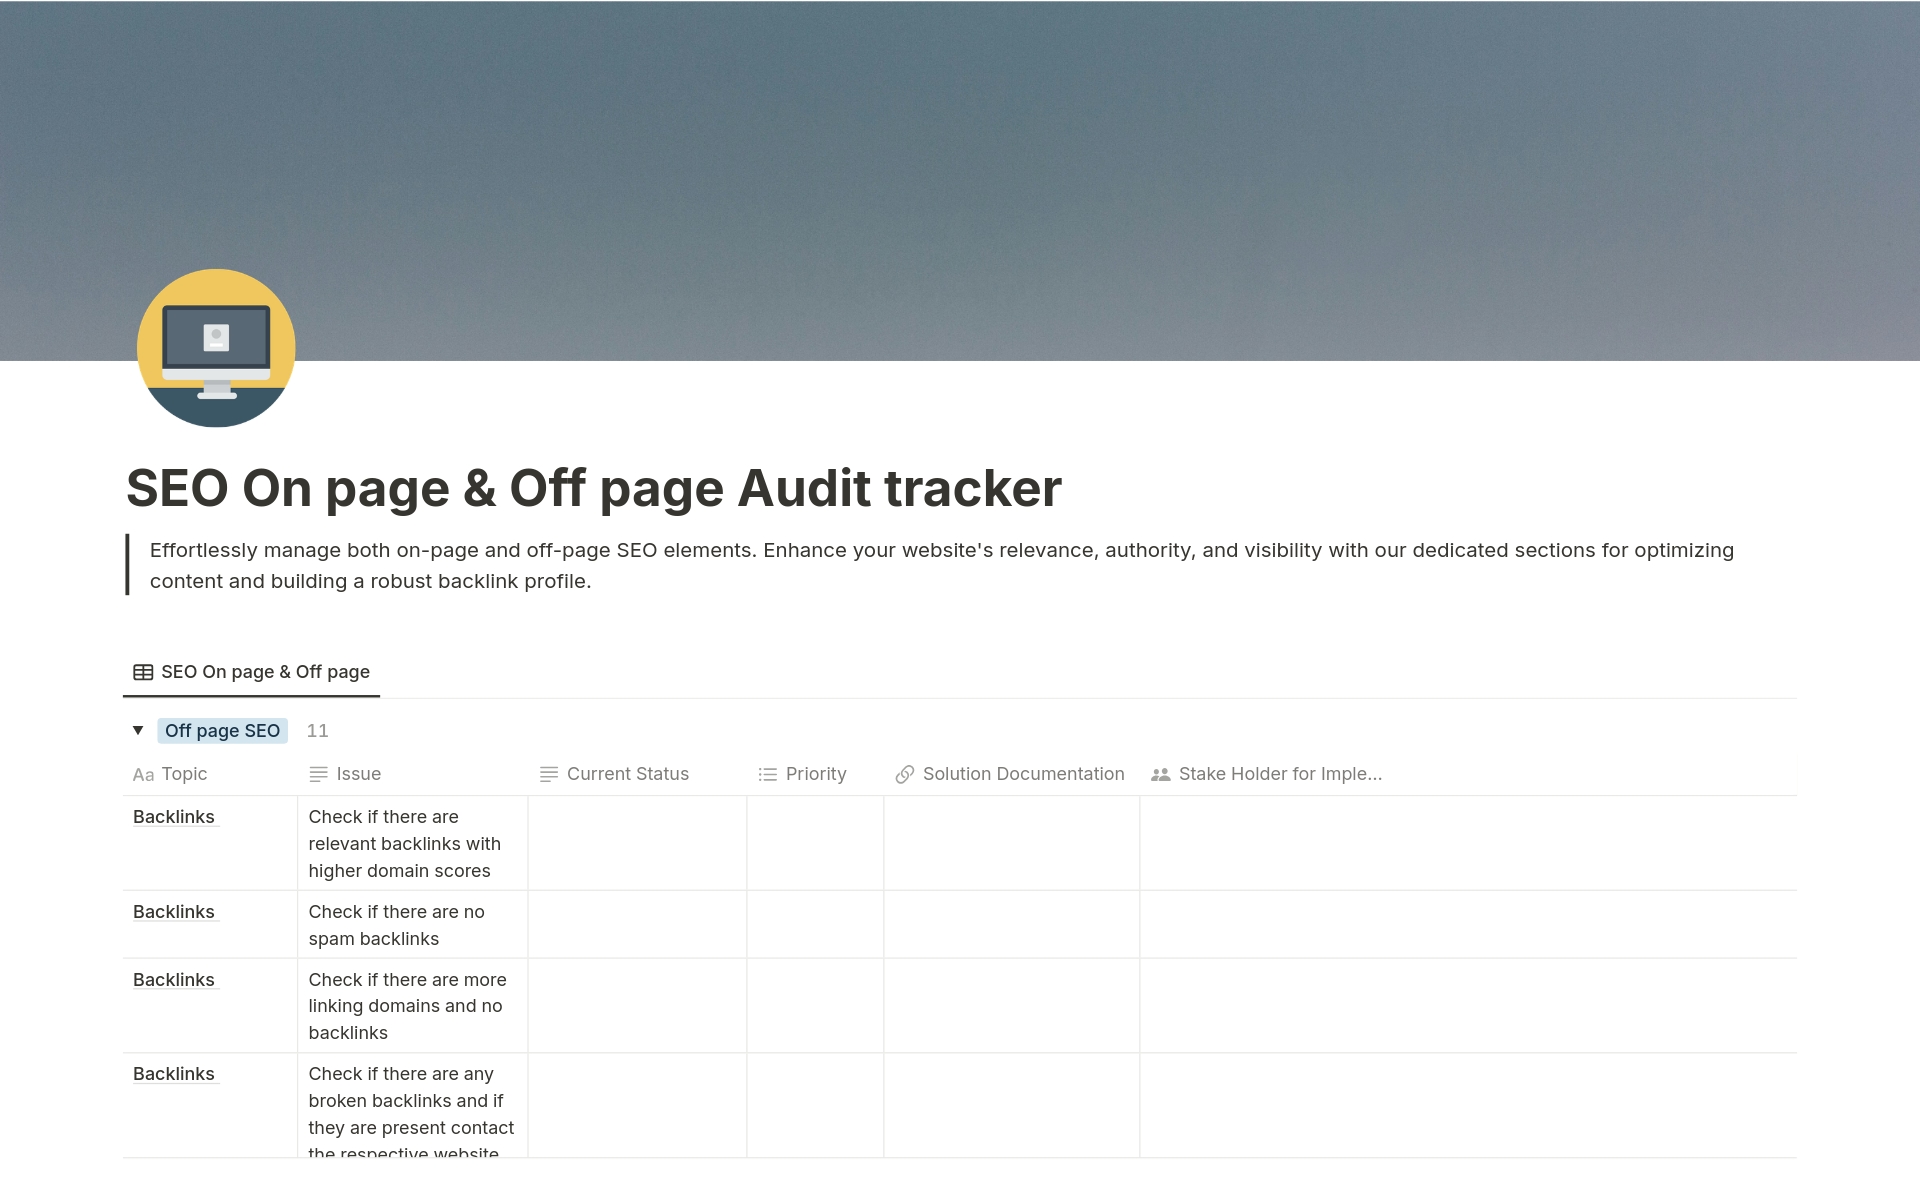 Vista previa de plantilla para SEO On page & Off page Audit tracker 